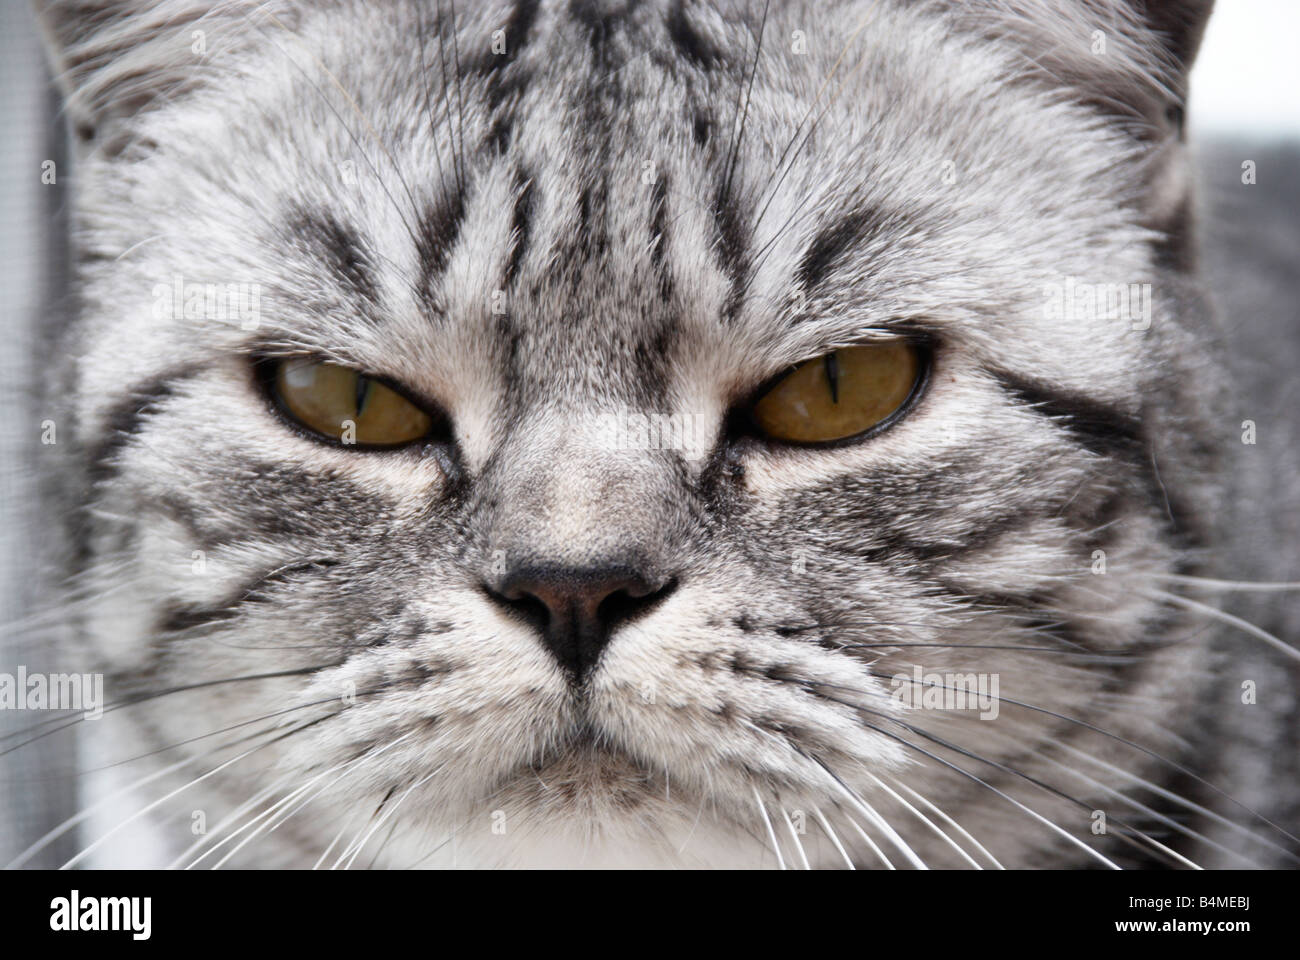 close up of grumpy cat's face Stock Photo